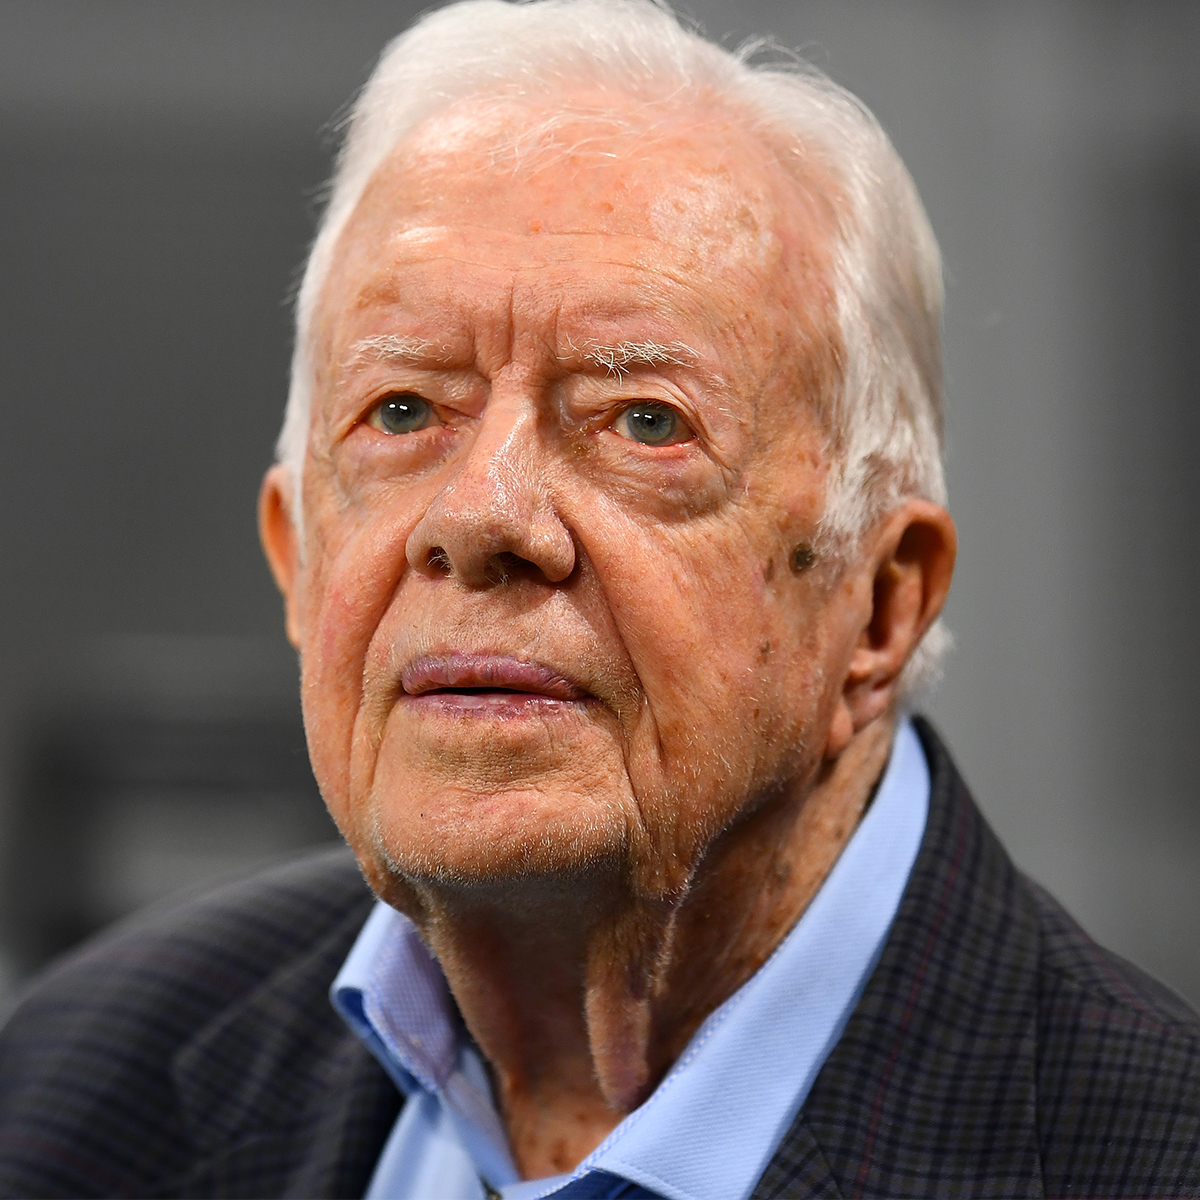 Бившият президент Джими Картър вече не е буден всеки ден сред хосписни грижи